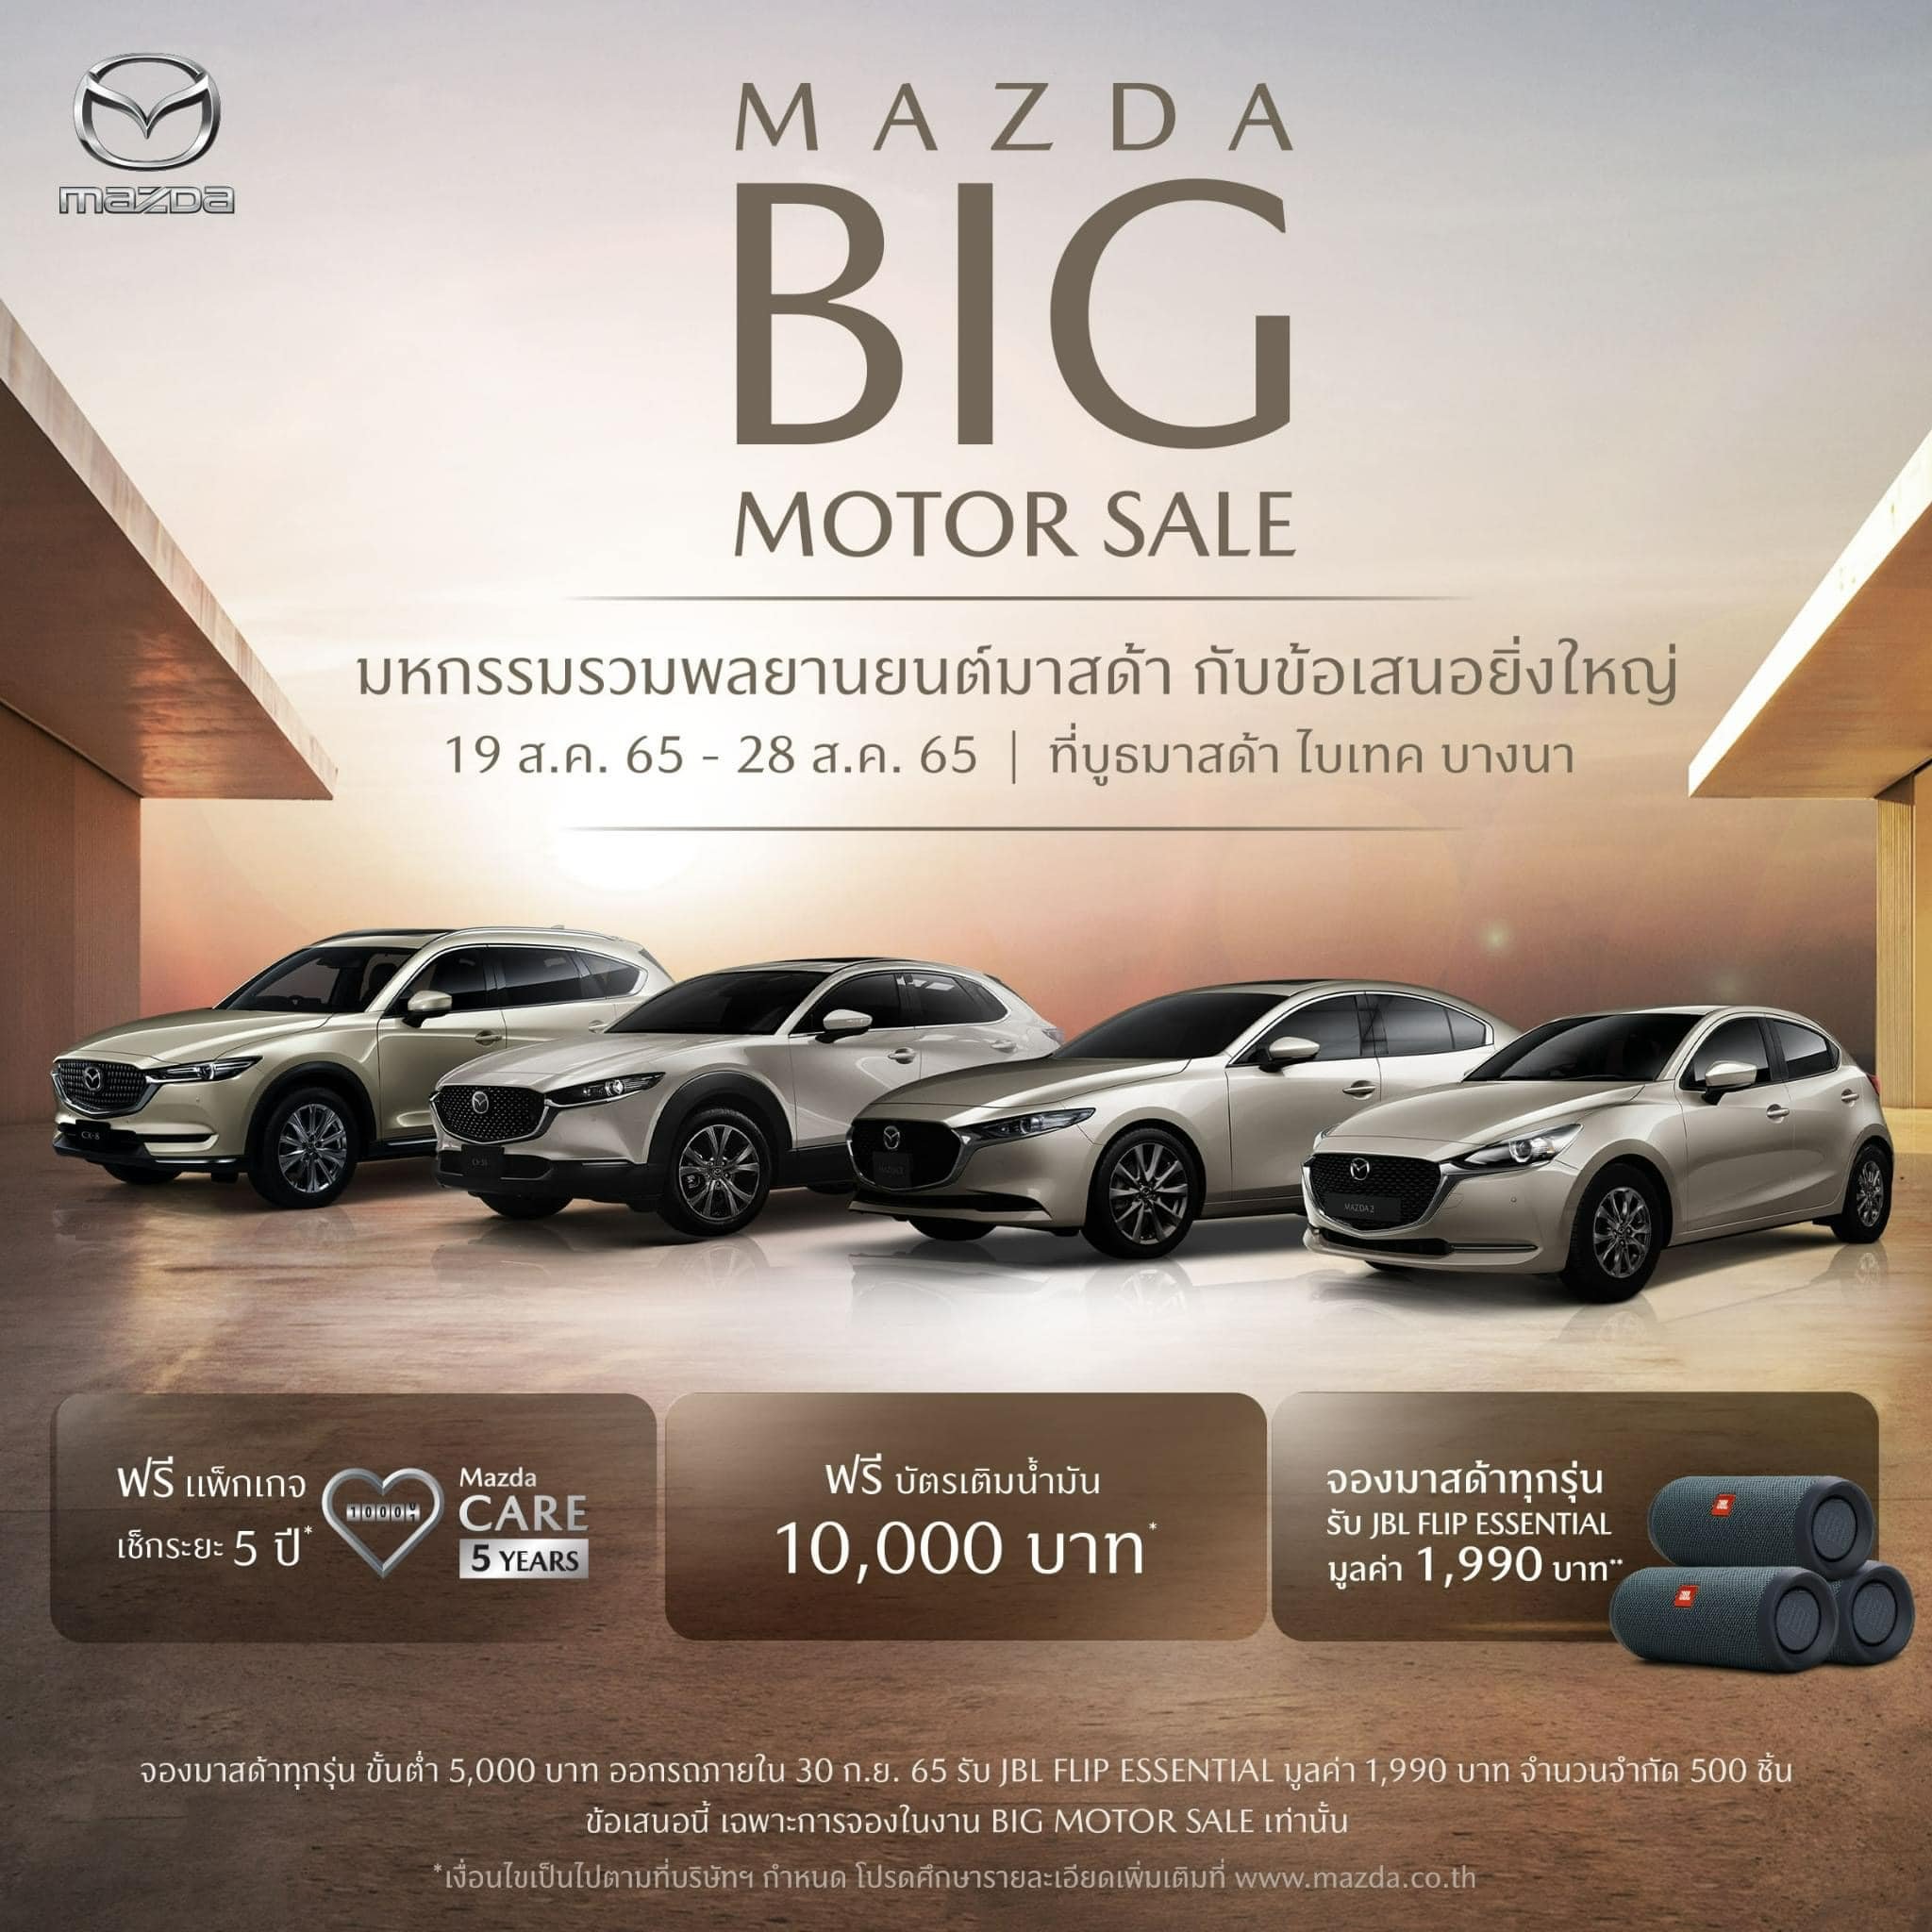 Mazda Big Motor Sale มหกรรมรวมพลยานยนต์มาสด้า